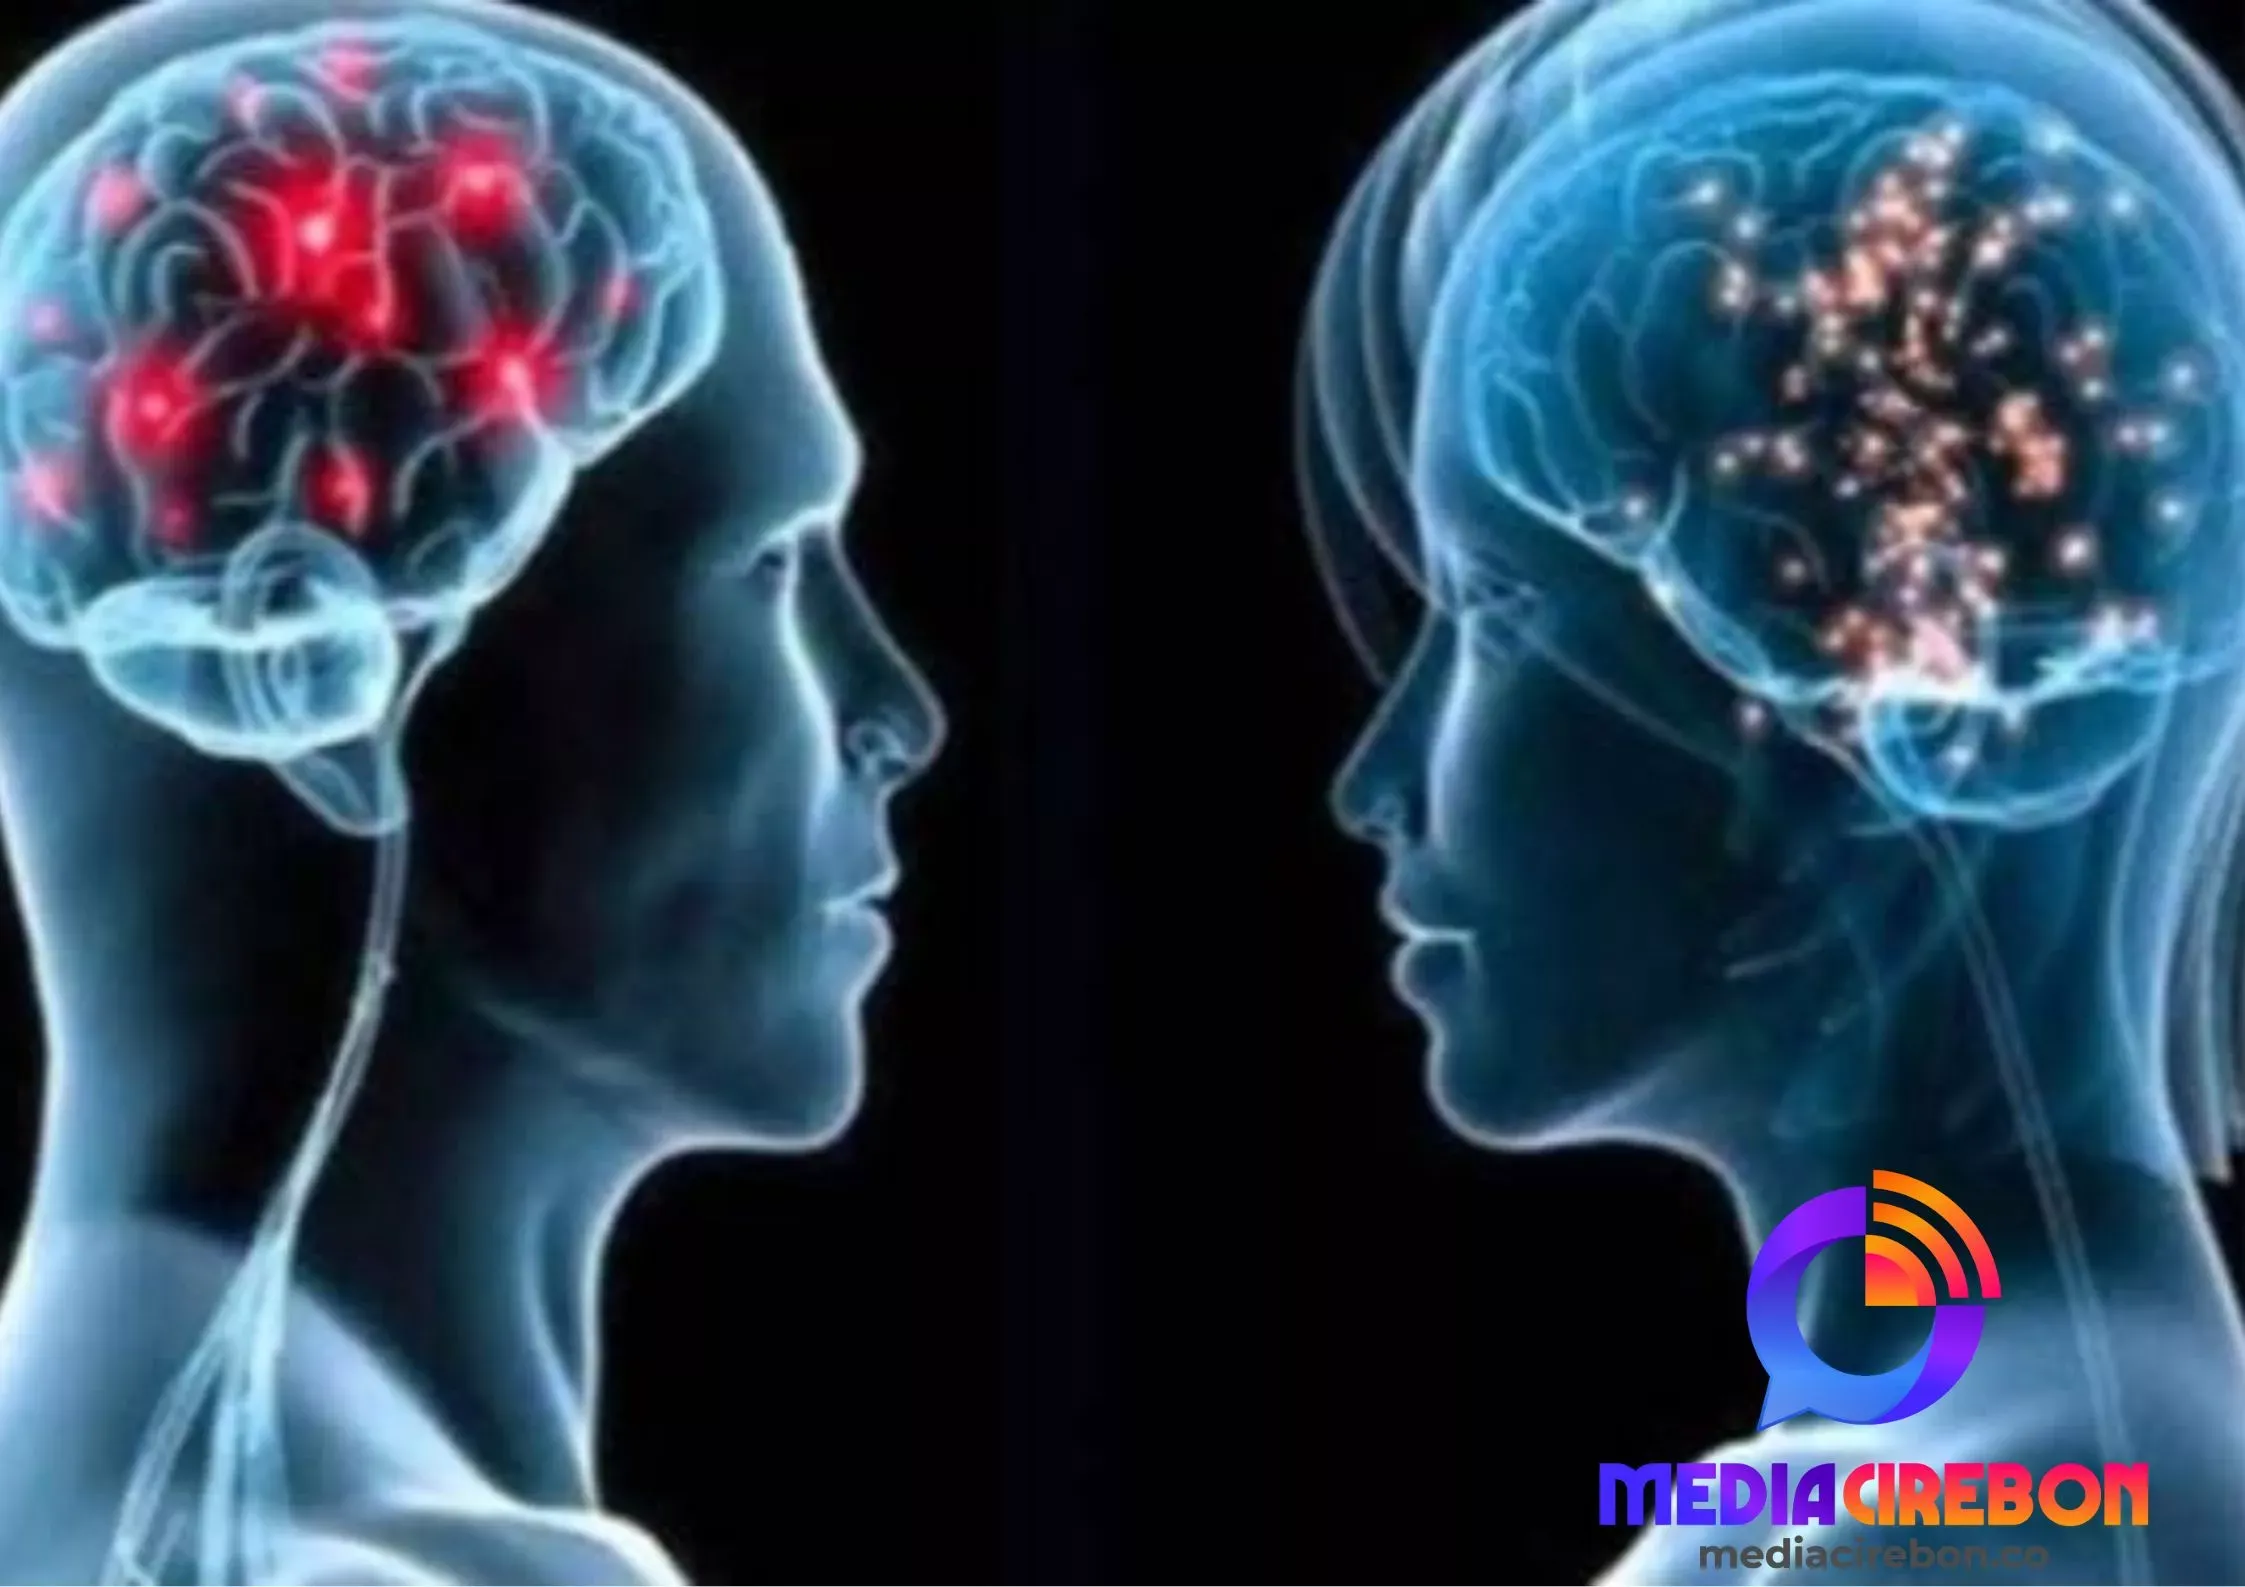 Gangguan Kesehatan Otak: Inilah 5 Kebiasaan yang Harus Dihindari Menurut Pakar Medis